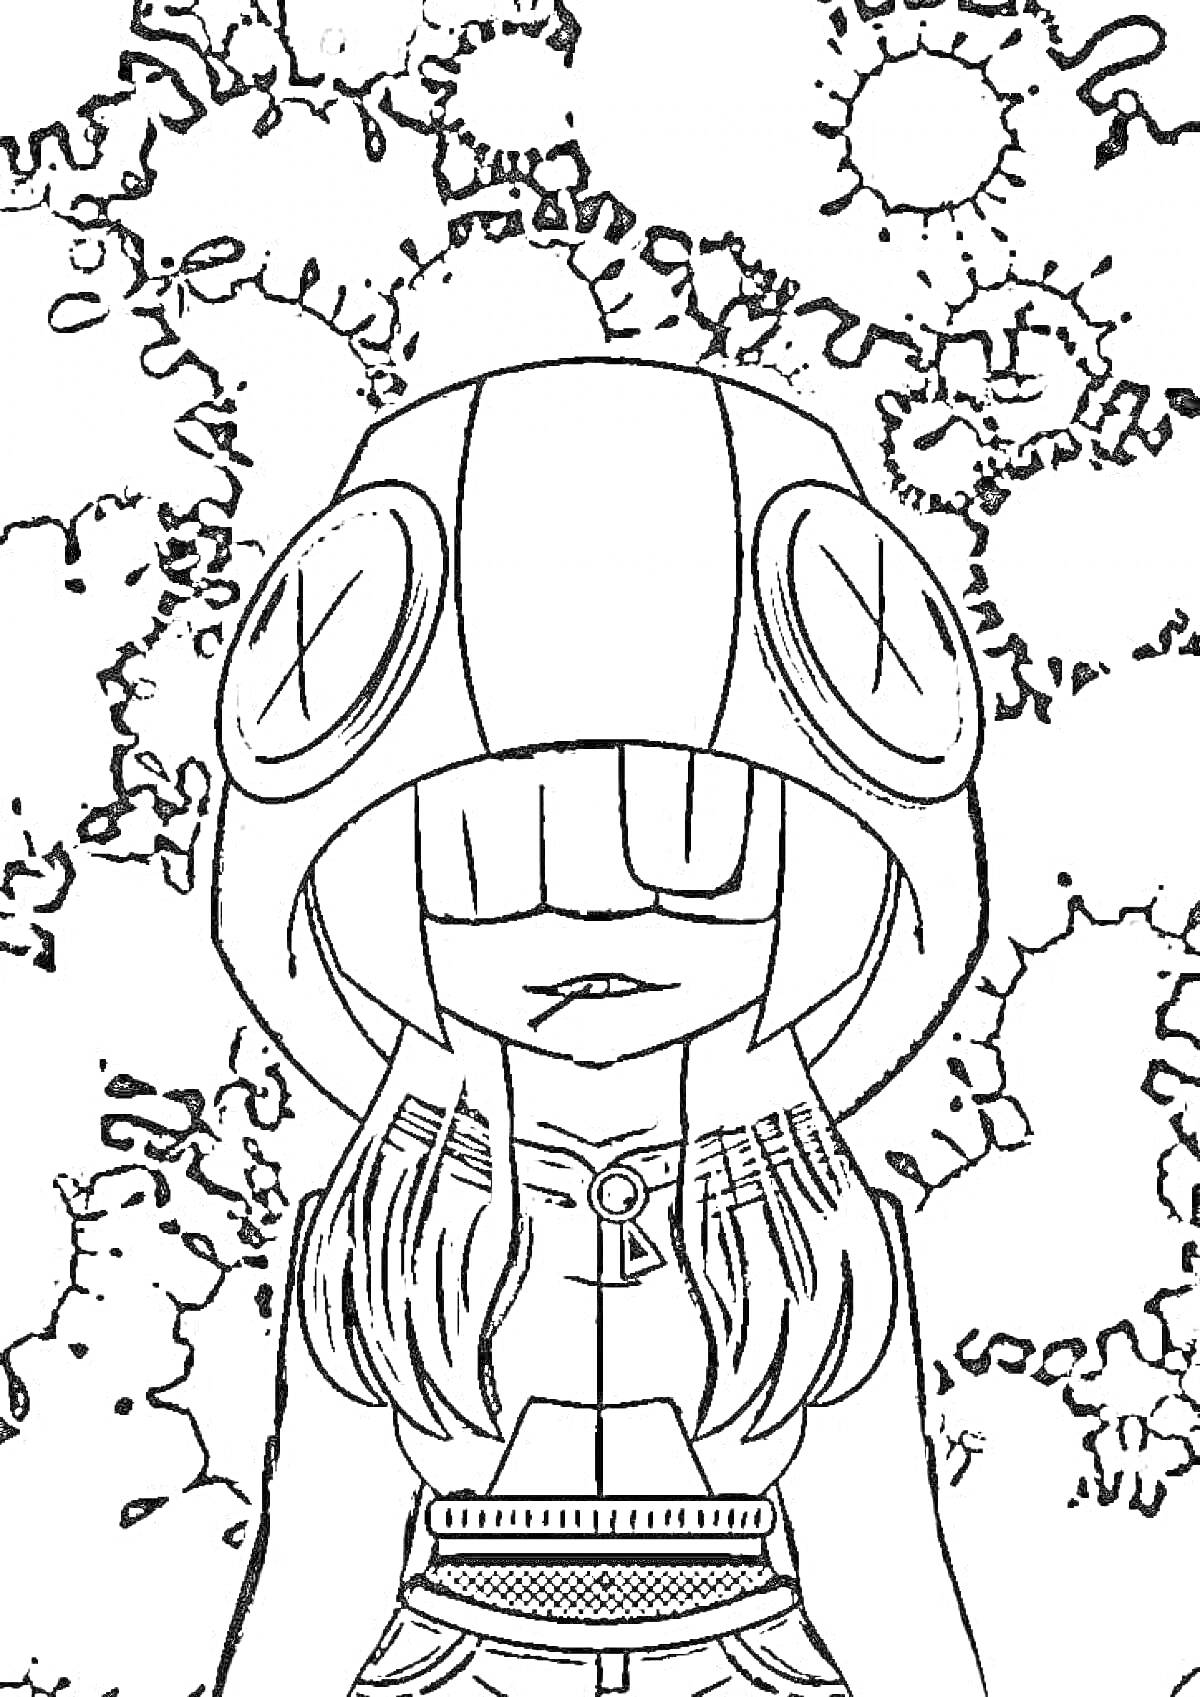 Раскраска Девушка в капюшоне с большими пуговицами, аниме-стиль, фон с кругами и линиями